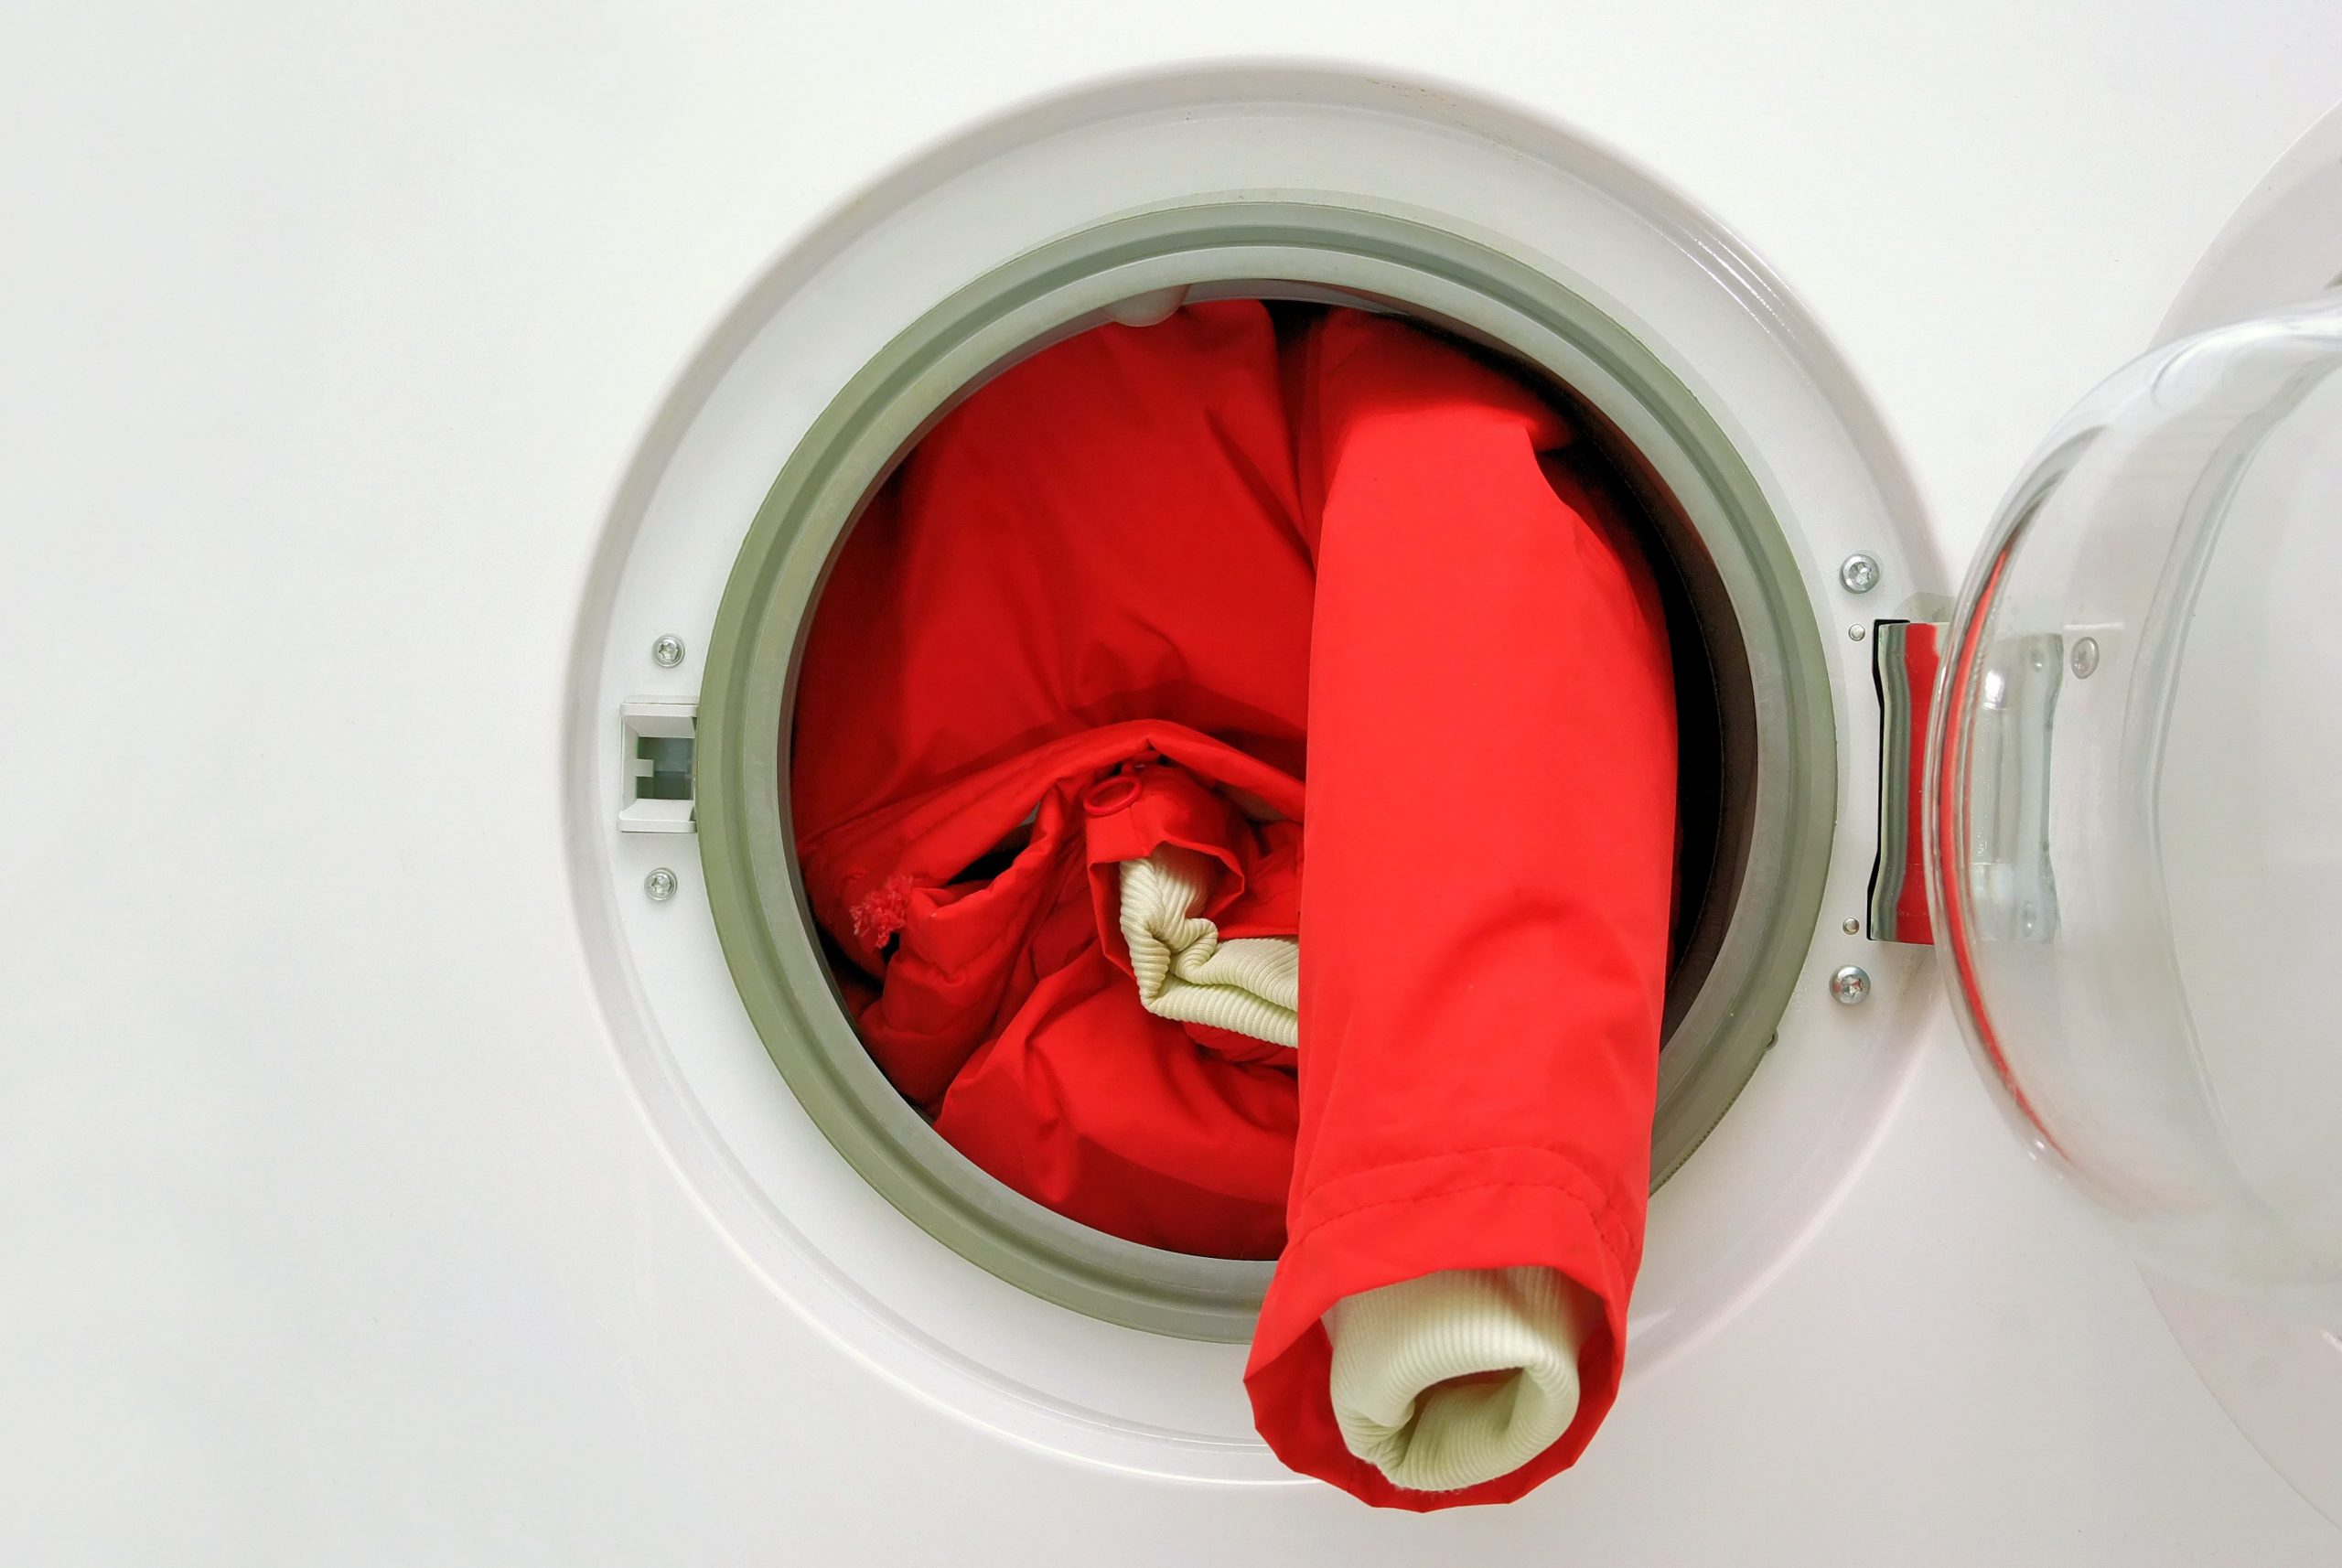 Горнолыжная куртка: как стирать вручную и в стиральной машине, режим и температура